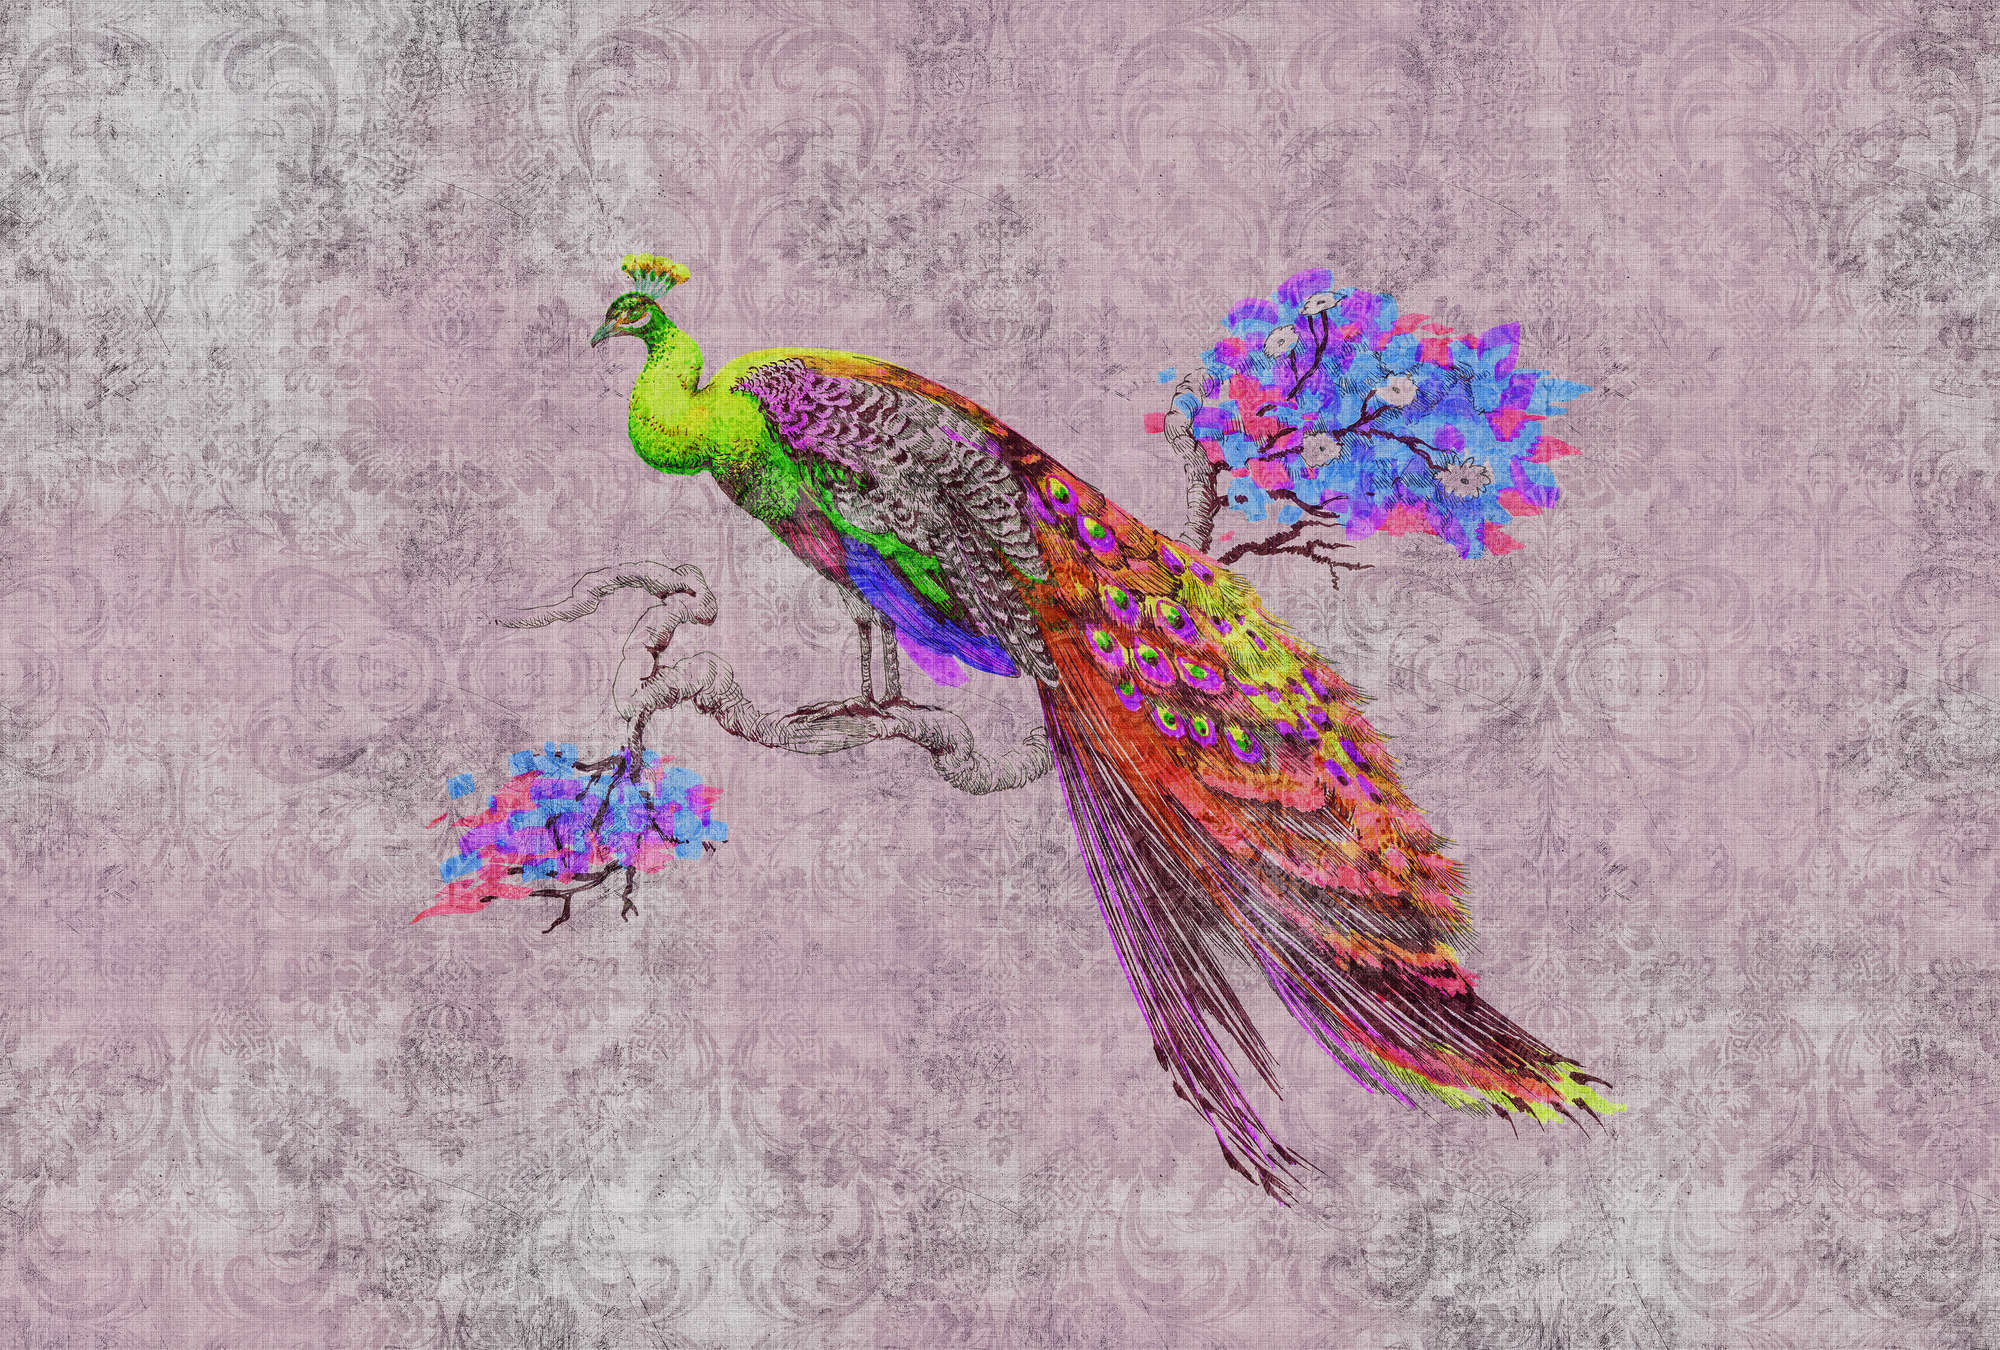             Peacock 2 - Digital behang met pauwenmotief & ornament patroon in natuurlijke linnenstructuur - Groen, Roze | Strukturenvlies
        